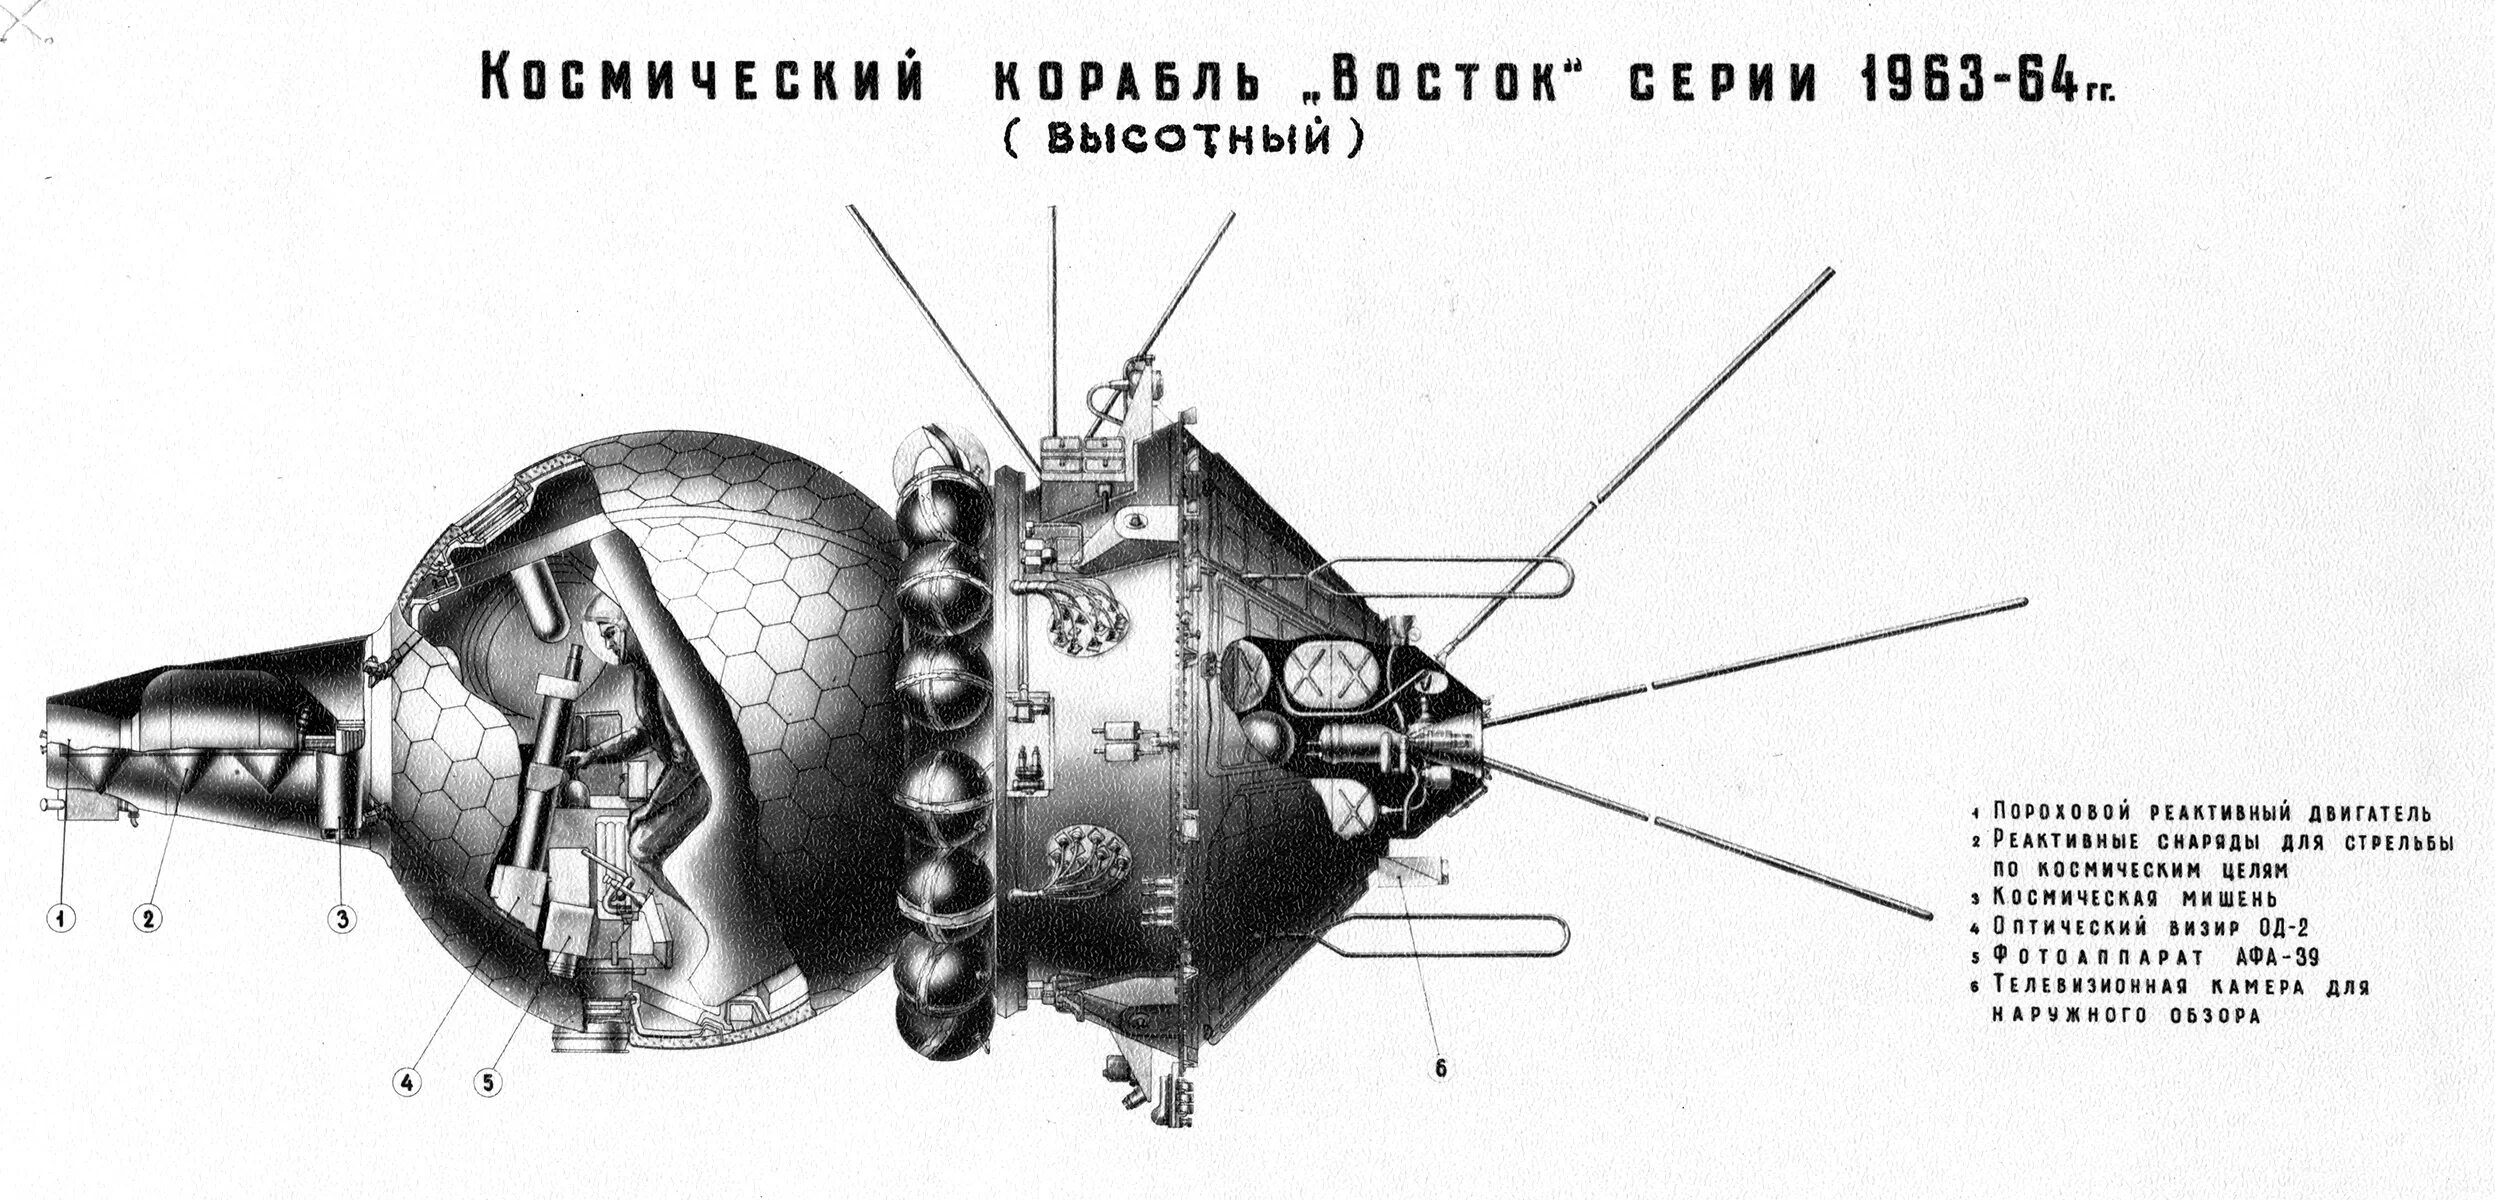 Первый космический аппарат поднявший человека. Спускаемый аппарат корабля «Восток-1». Космический аппарат Гагарина Восток-1. Аппарат Восток 1 чертеж. Первый пилотируемый космический корабль Восток-1.